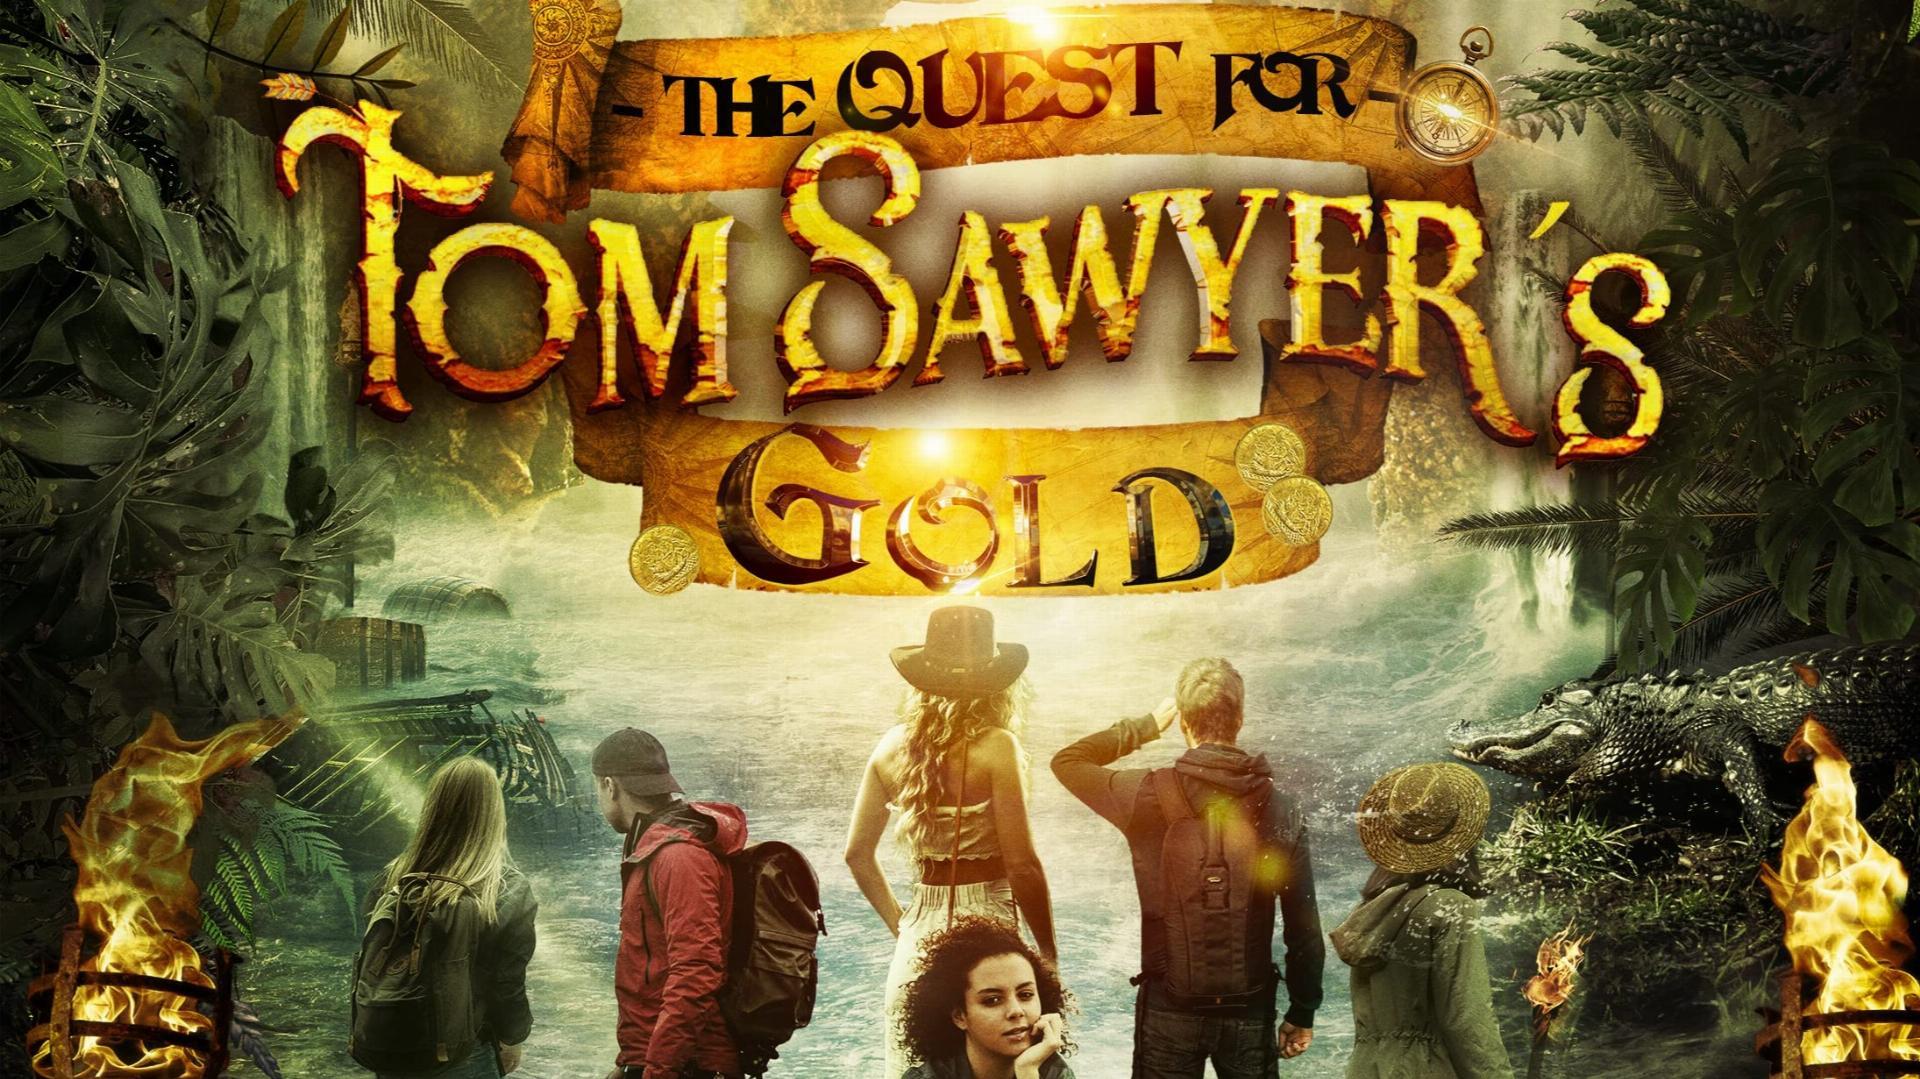 ტომ სოიერის საგანძური / The Quest for Tom Sawyer's Gold